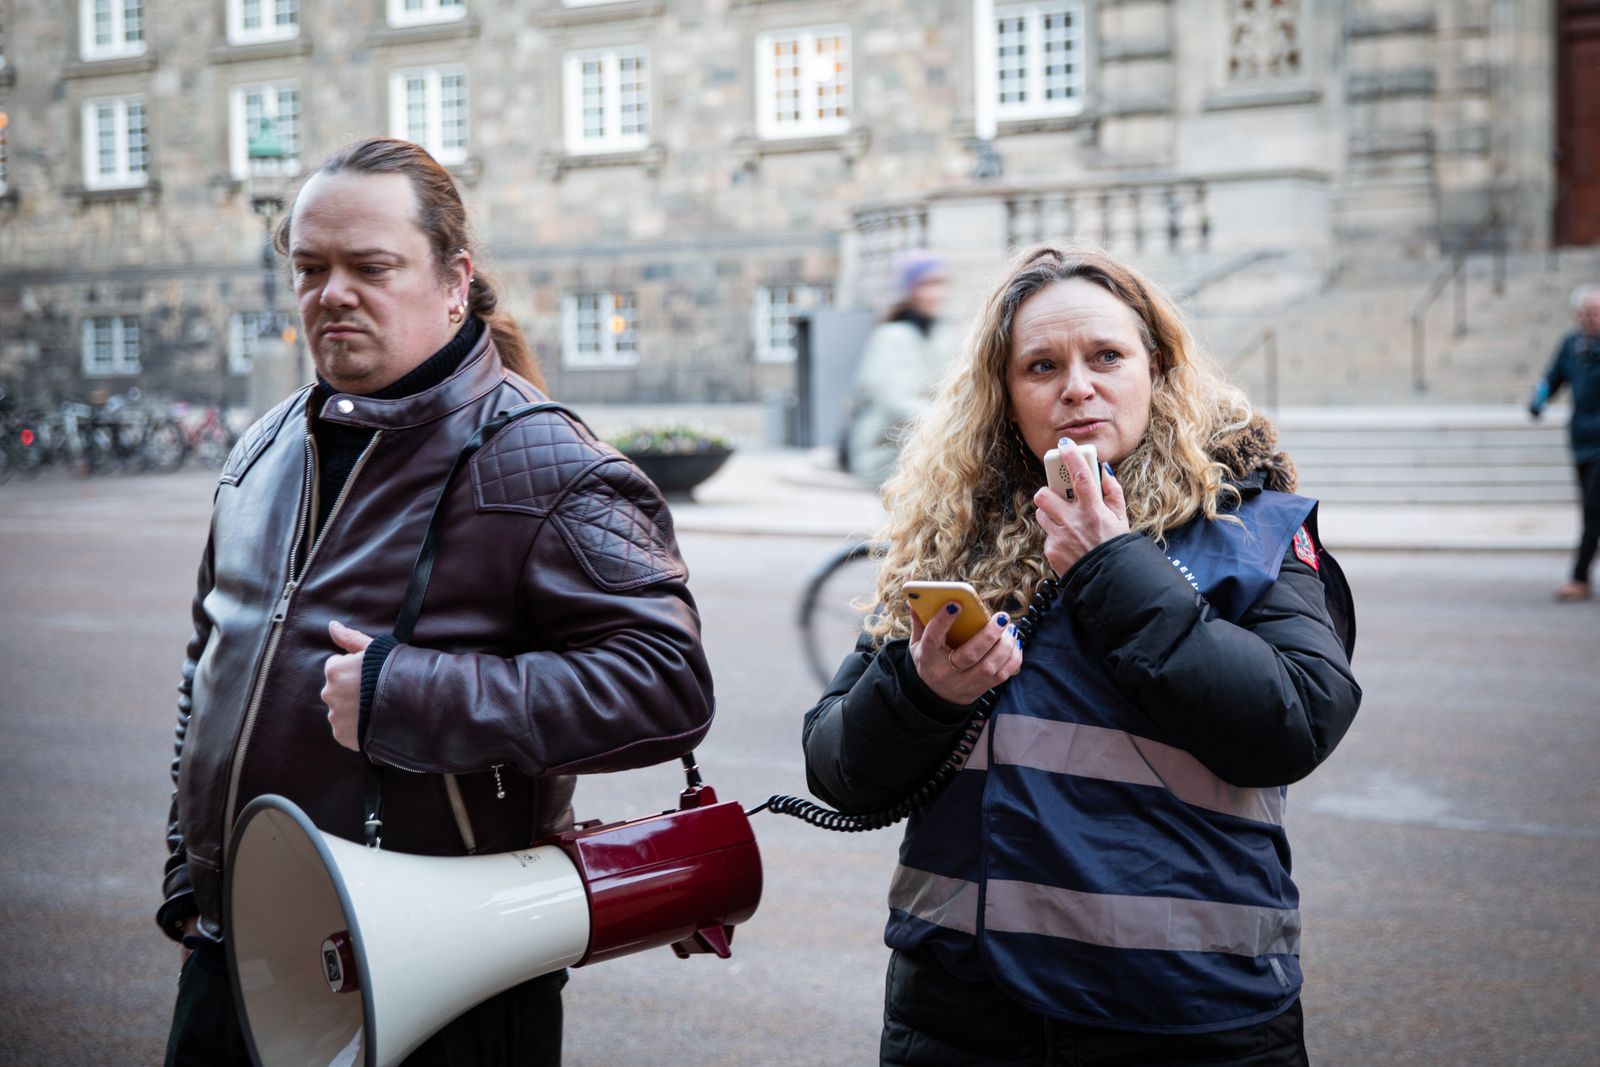 Næstformand Janne Riise Hansen holdt tale ved demonstration foran Christiansborg. Foto: Torben Kloster